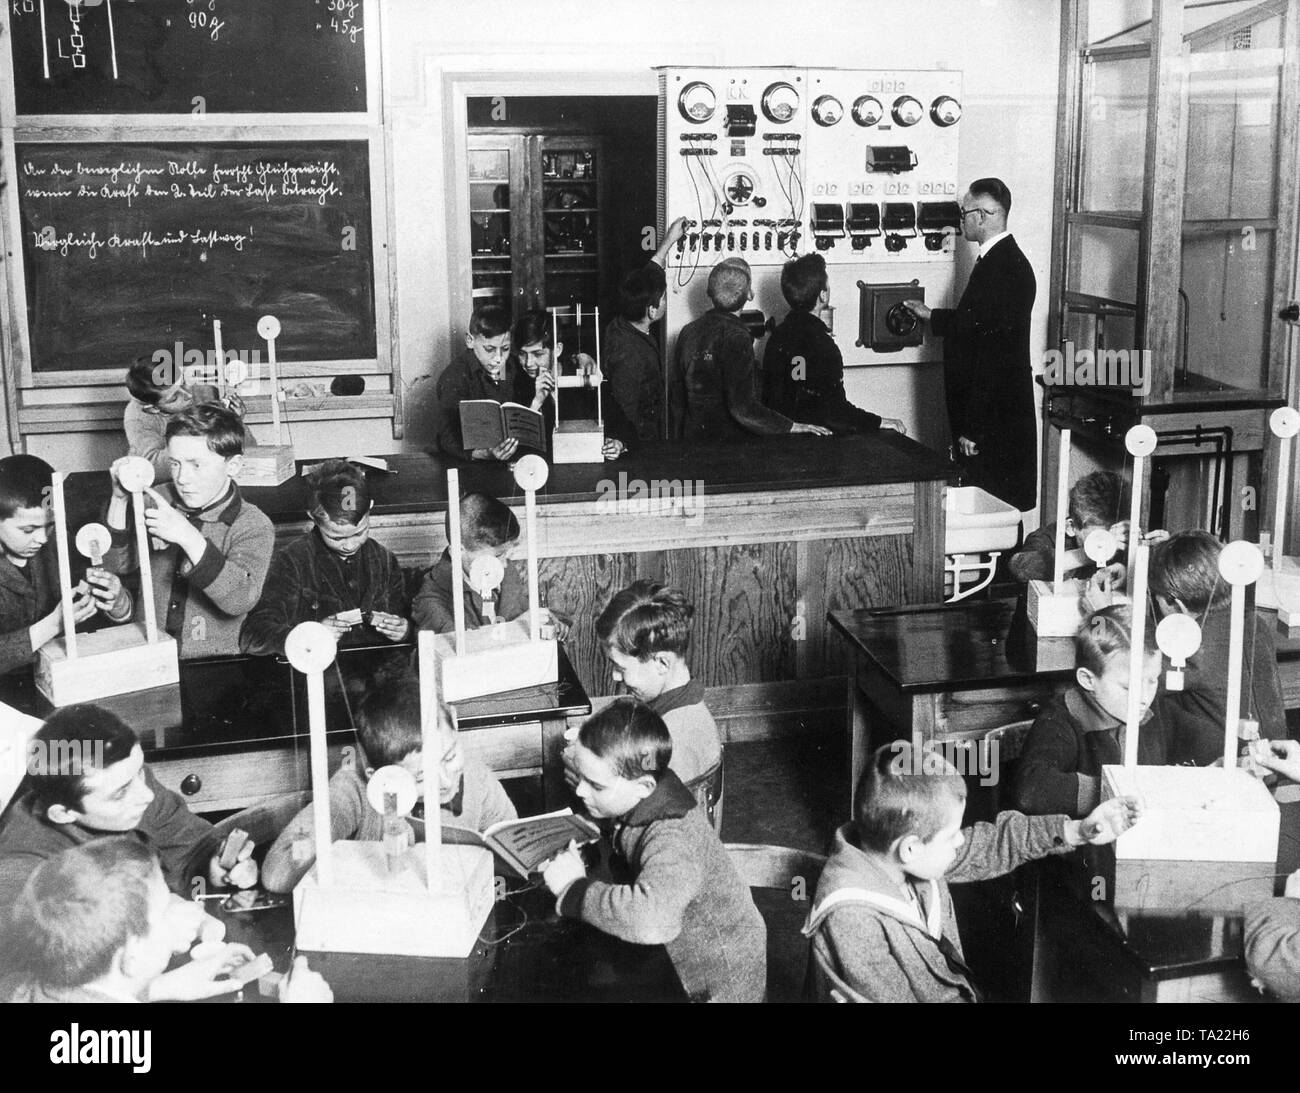 La "scuola ideale' in Kaulsdorf Berlino, Germania nel 1928. Una nuova scuola è stato impostato secondo i più moderni principi. In aggiunta alle normali aule vi era una biblioteca pubblica, workshop, scuola di cucina e sala lettura. La foto mostra una classe fisica con il pannello elettrico Foto Stock